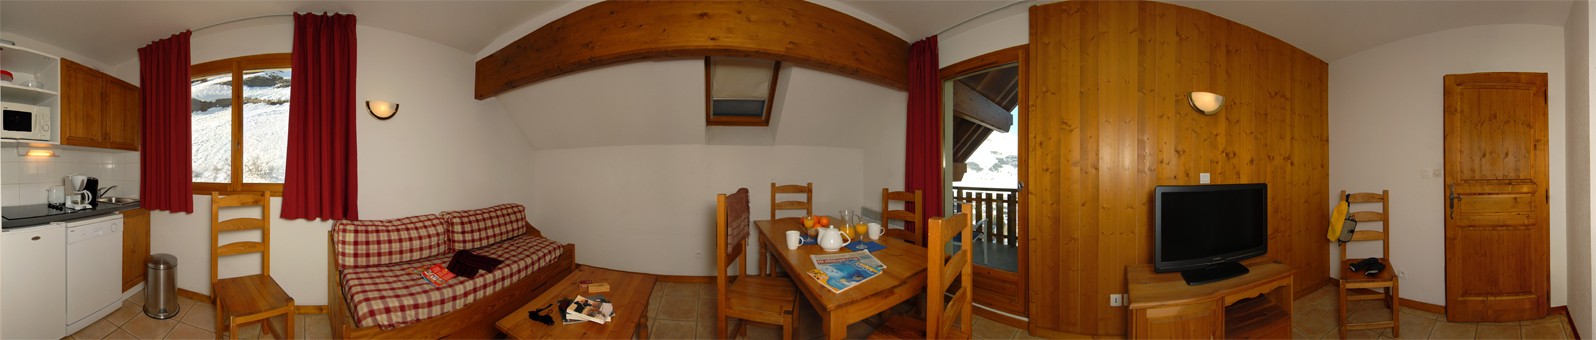 Les Deux Alpes - Le Prince des Ecrins : Interior view of an apartment